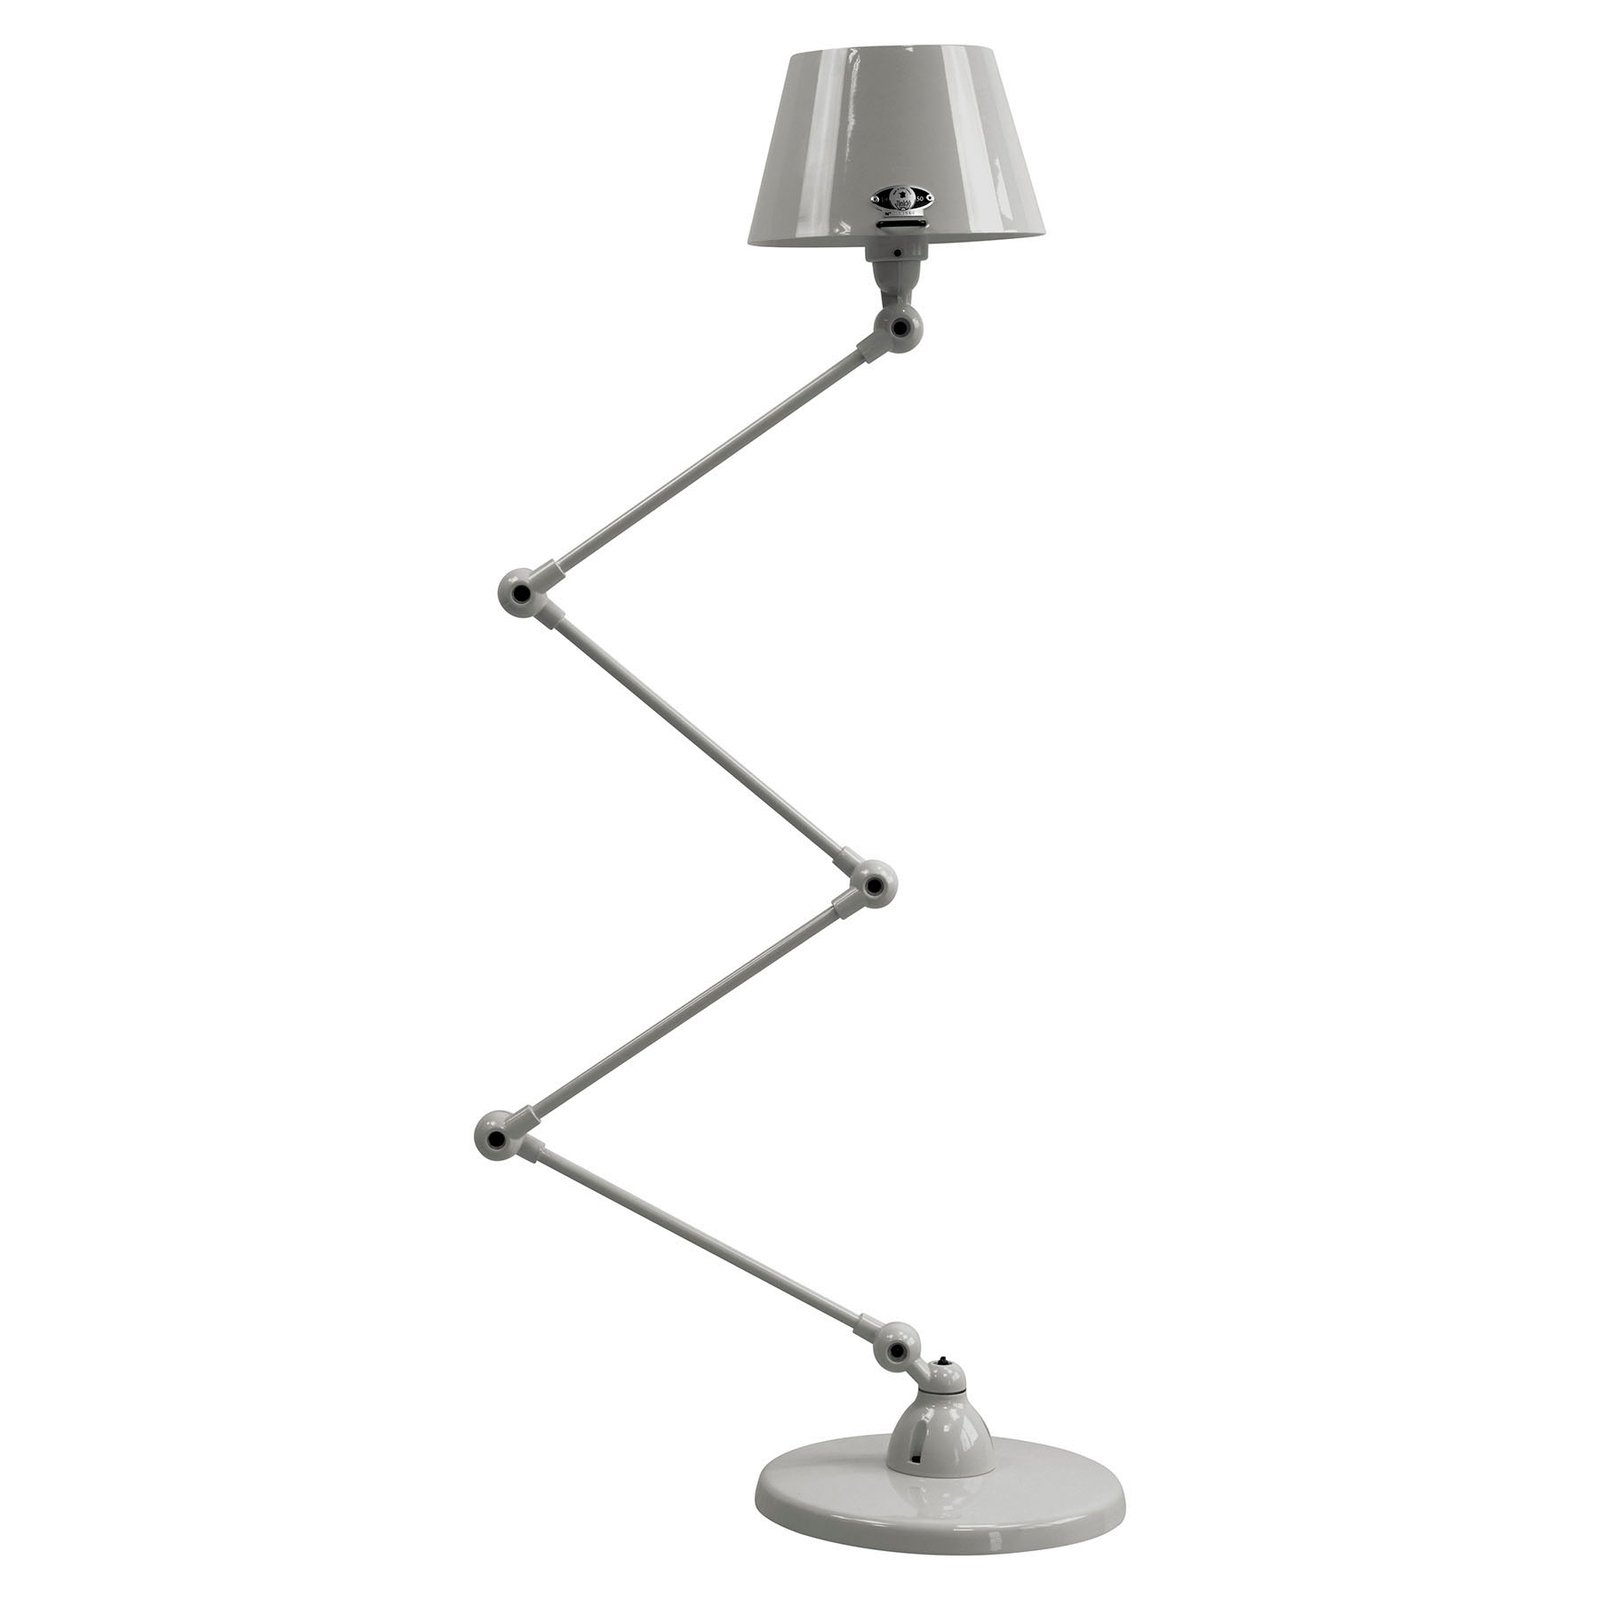 Jieldé Aicler AID433 floor lamp 4 x 30 cm, grey